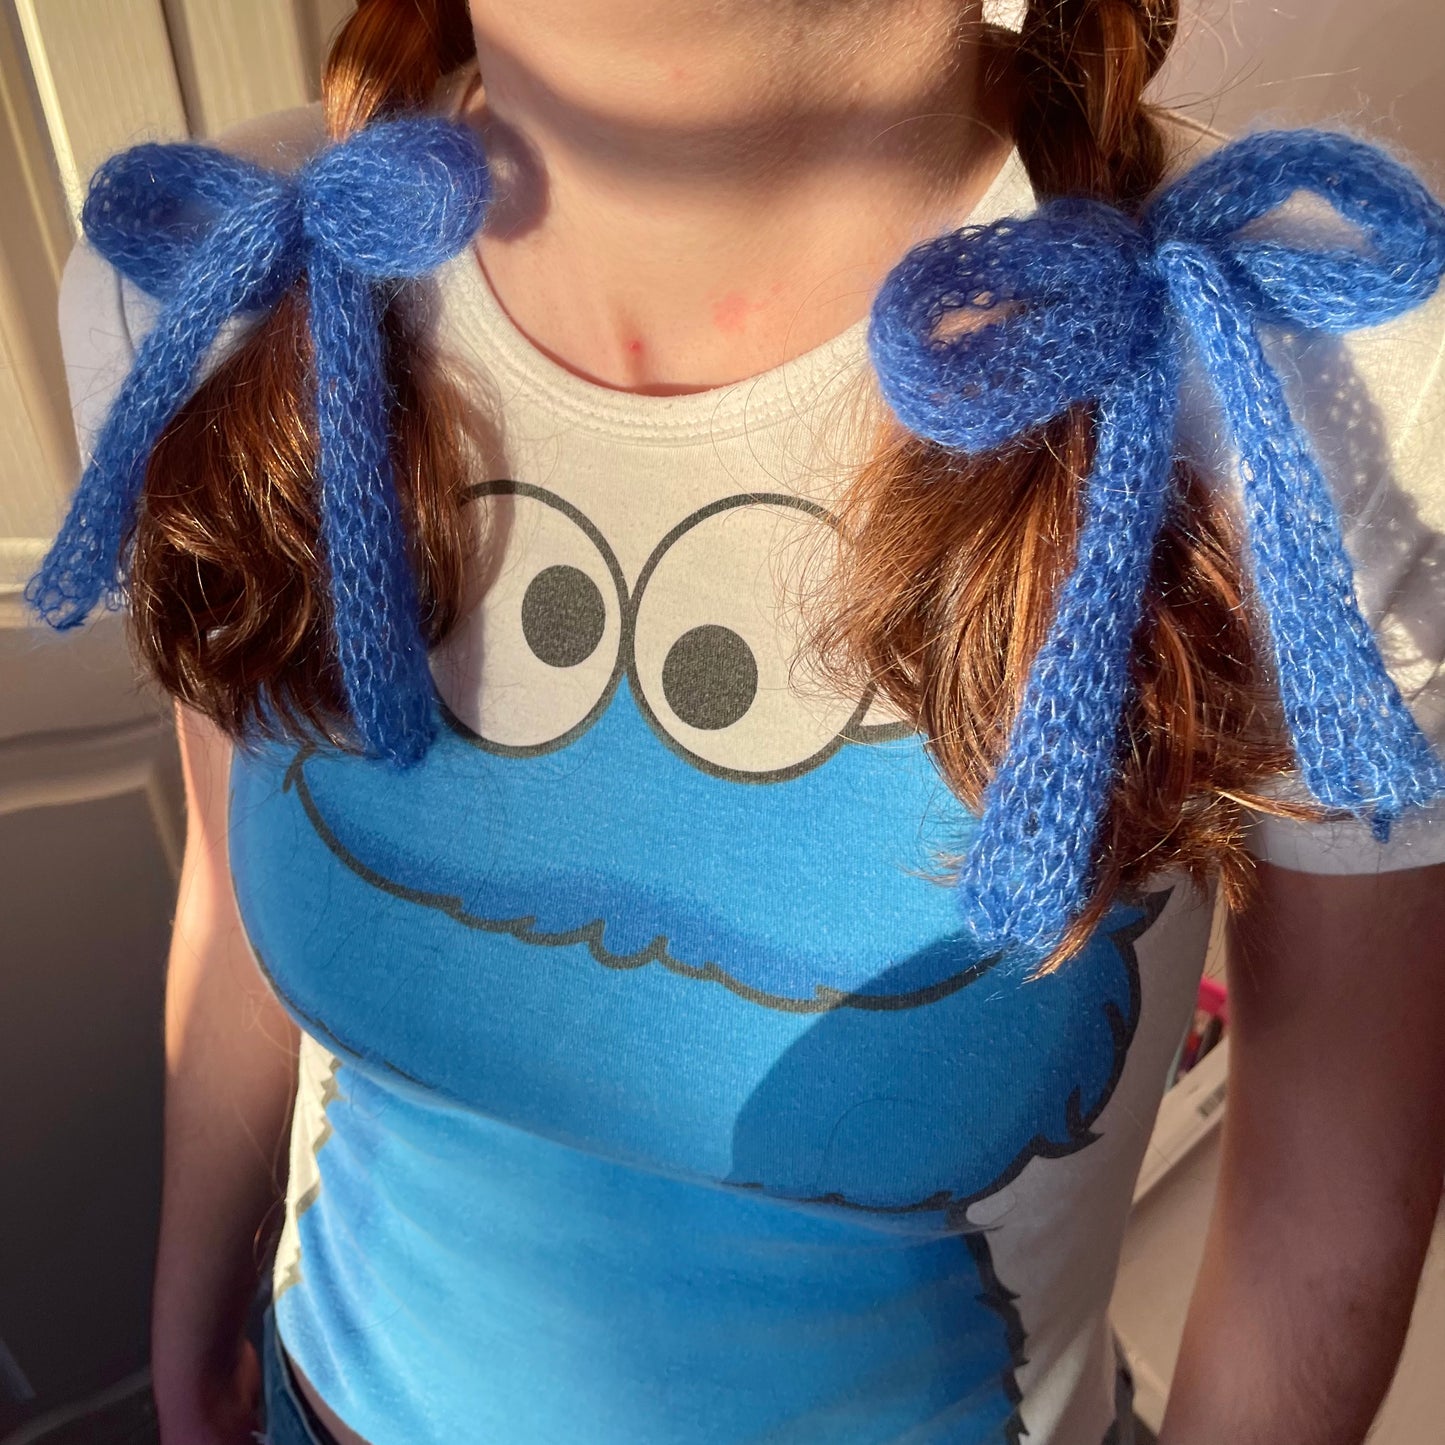 x2 handmade knitted hair bows in cobalt blue (pair)